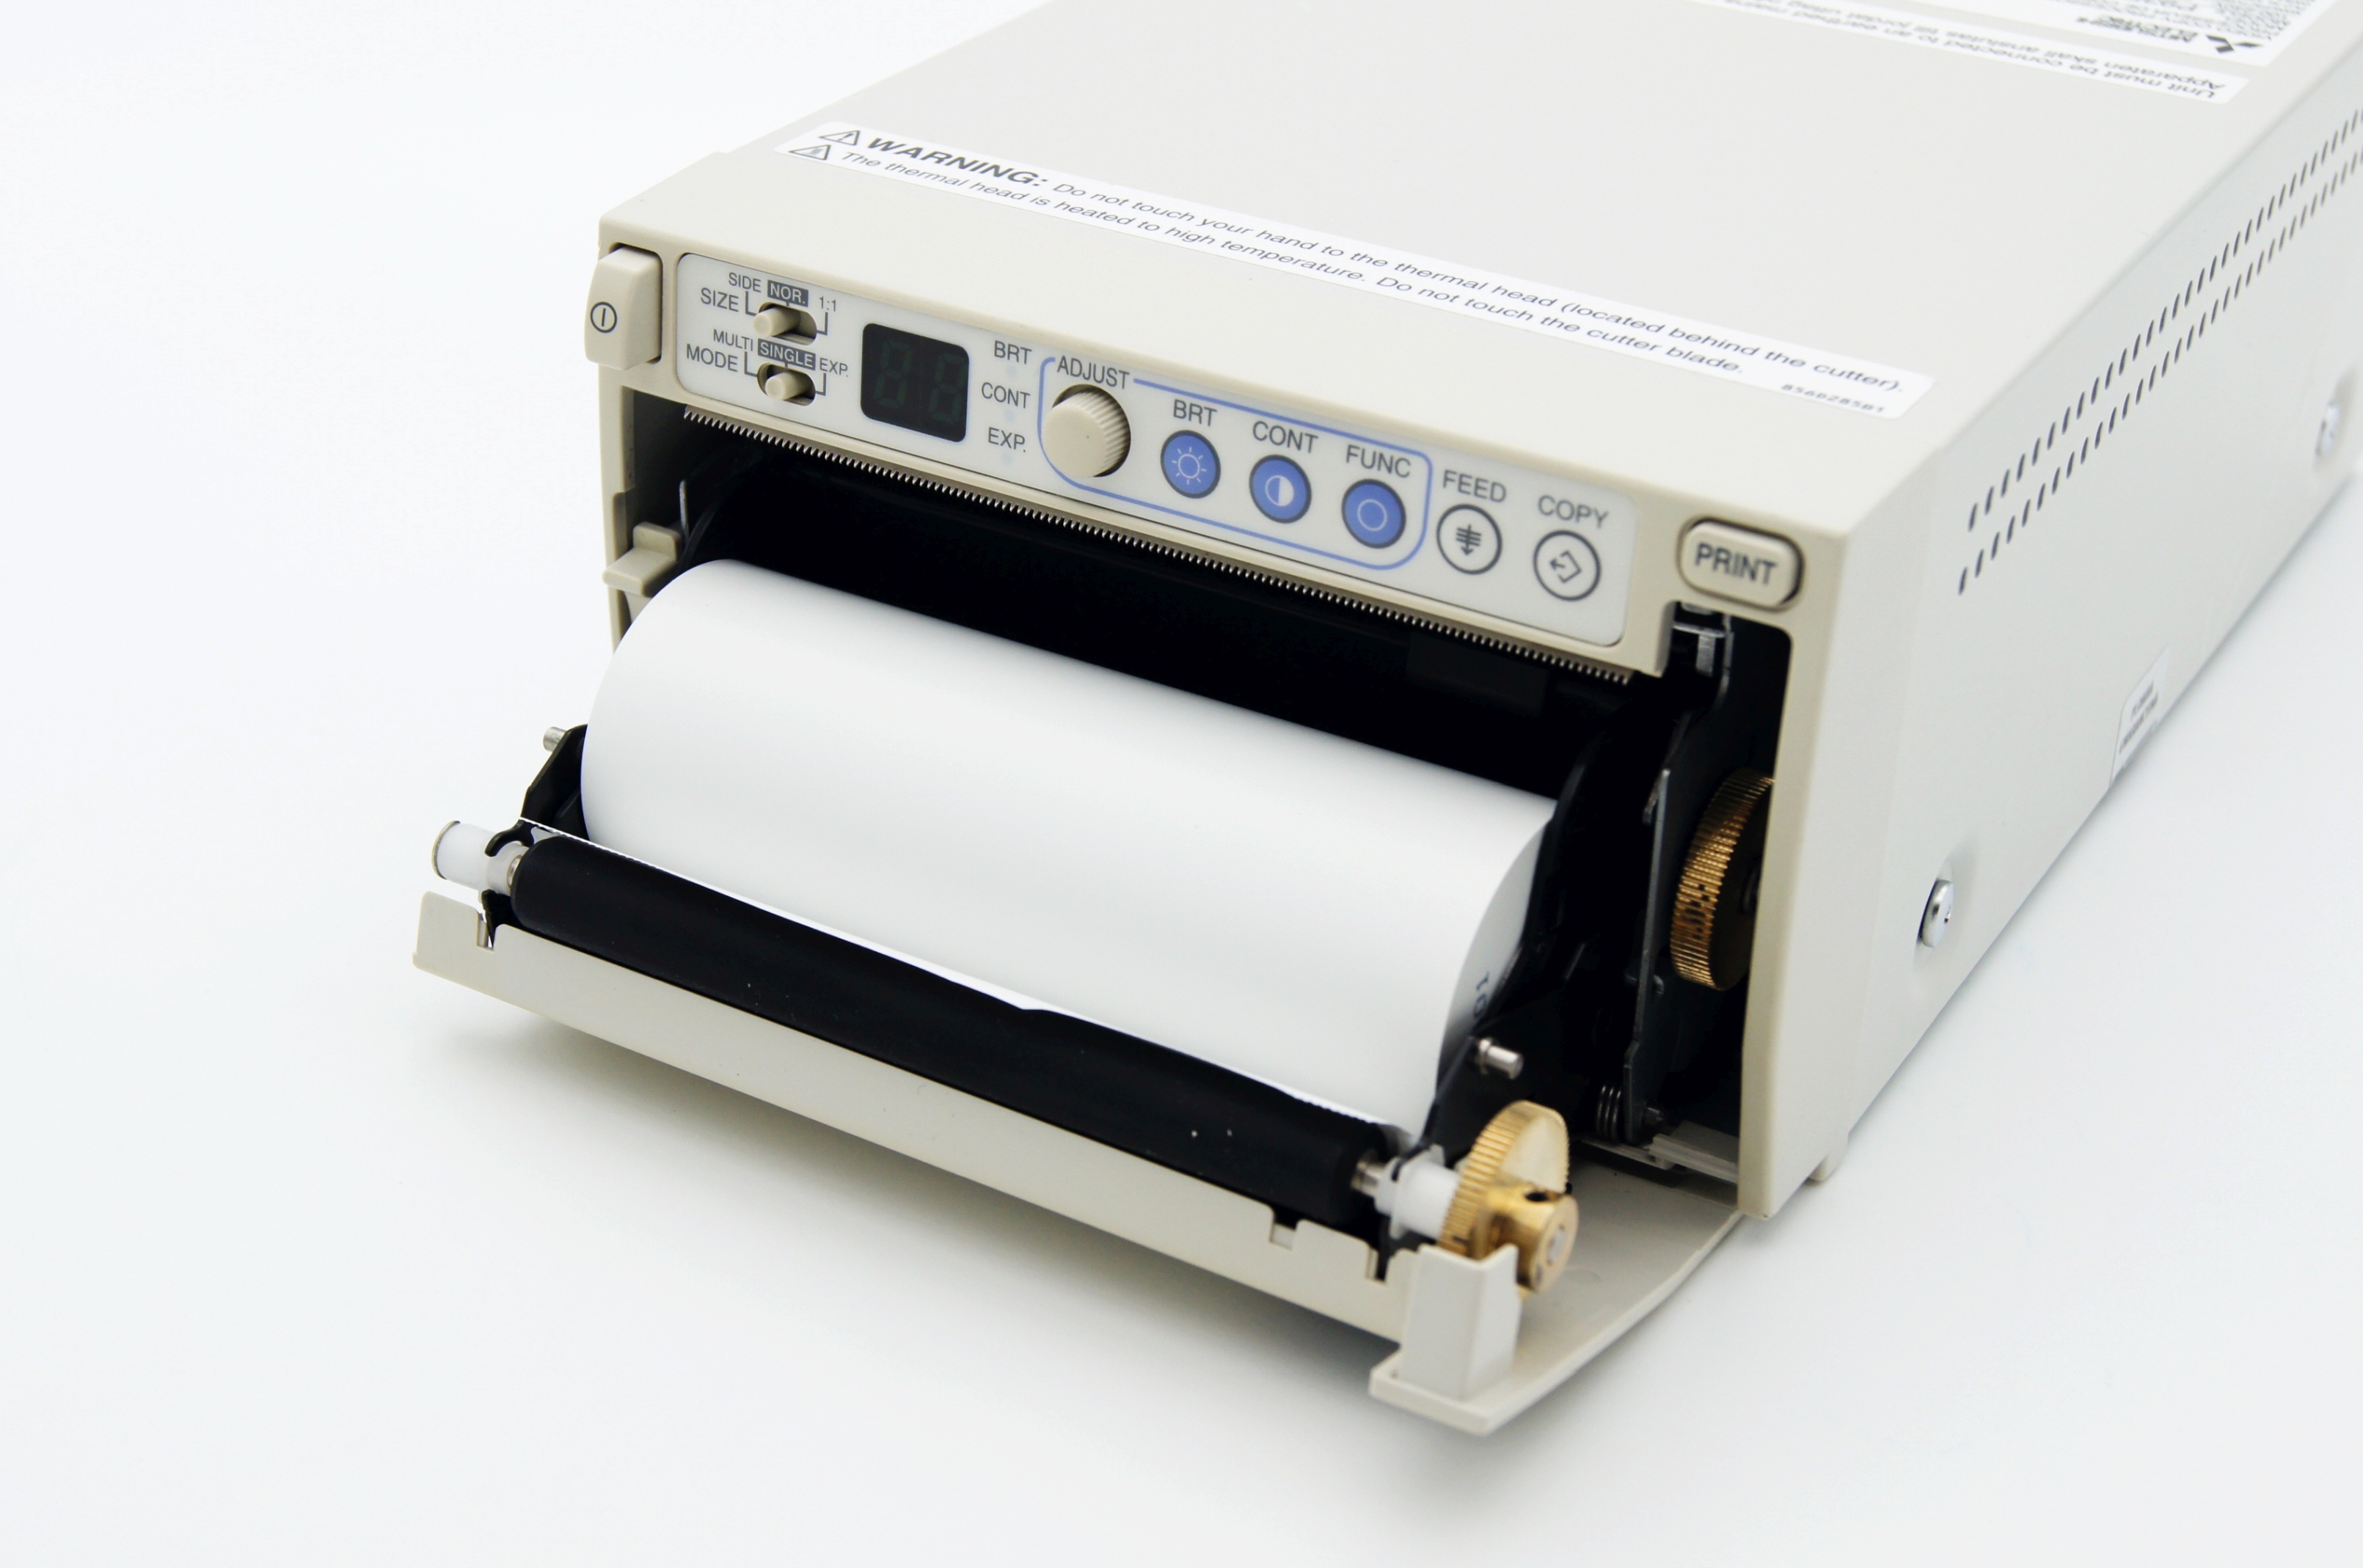 Videoprintery używane Mitsubishi MITSUBISHI P93E - Praiston rekondycjonowane